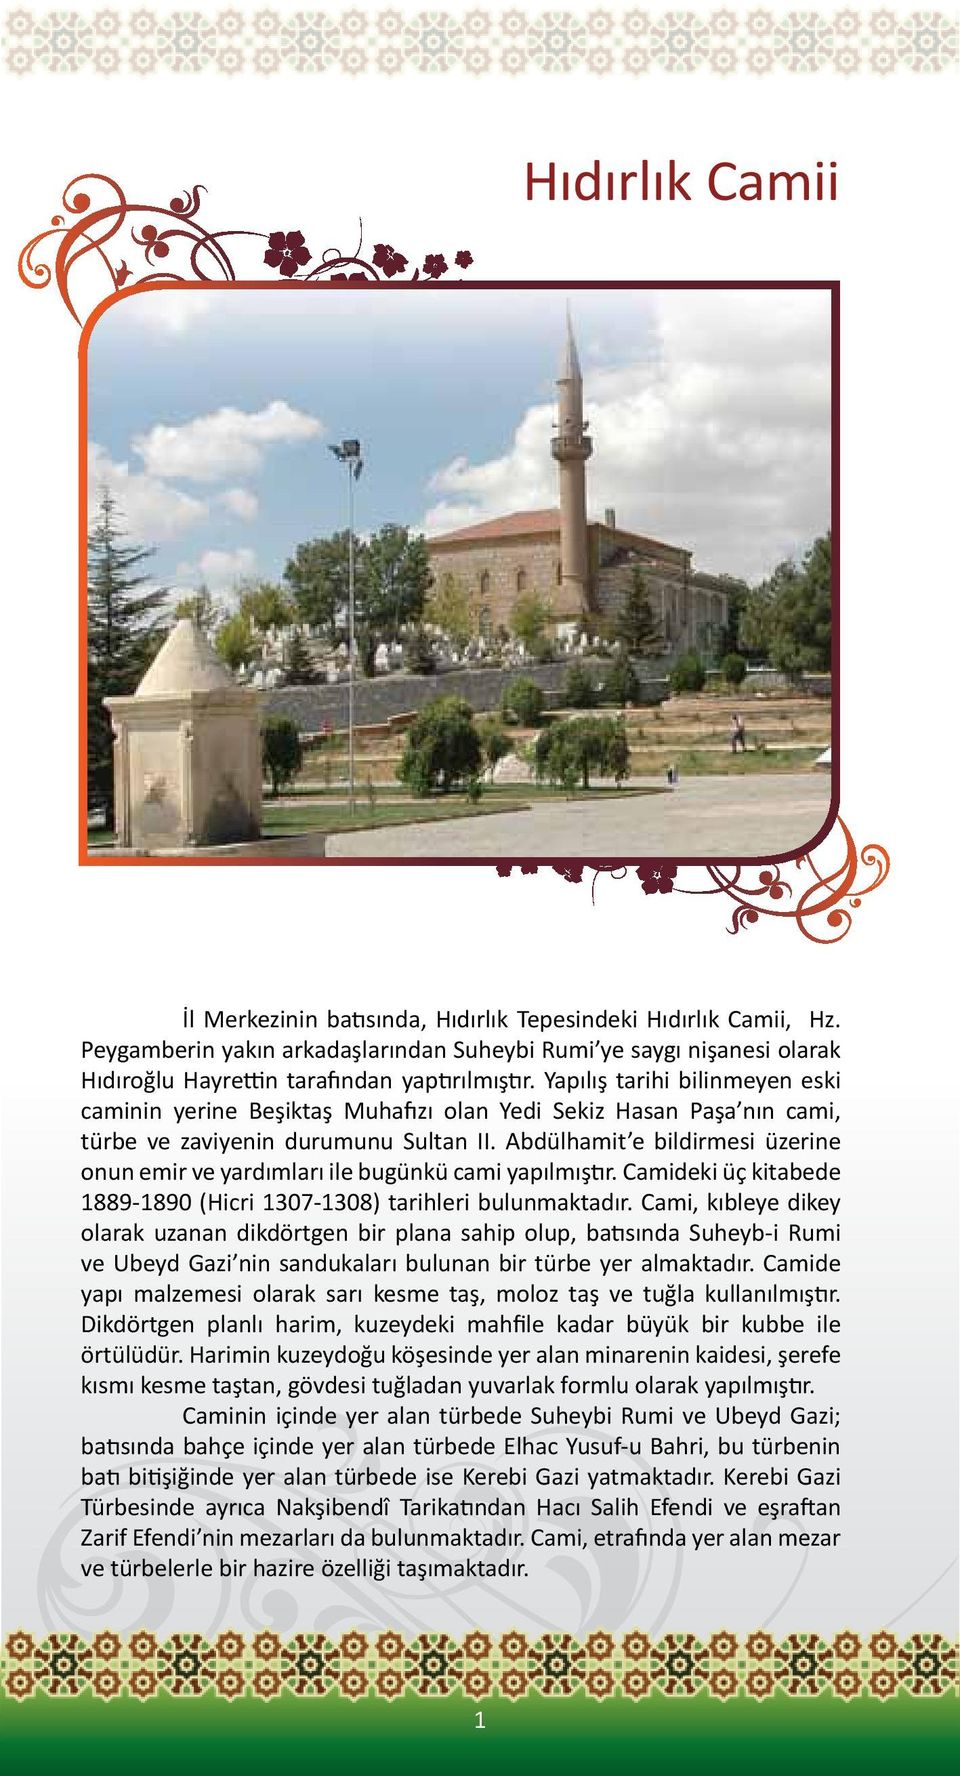 Abdülhamit e bildirmesi üzerine onun emir ve yardımları ile bugünkü cami yapılmıştır. Camideki üç kitabede 1889-1890 (Hicri 1307-1308) tarihleri bulunmaktadır.